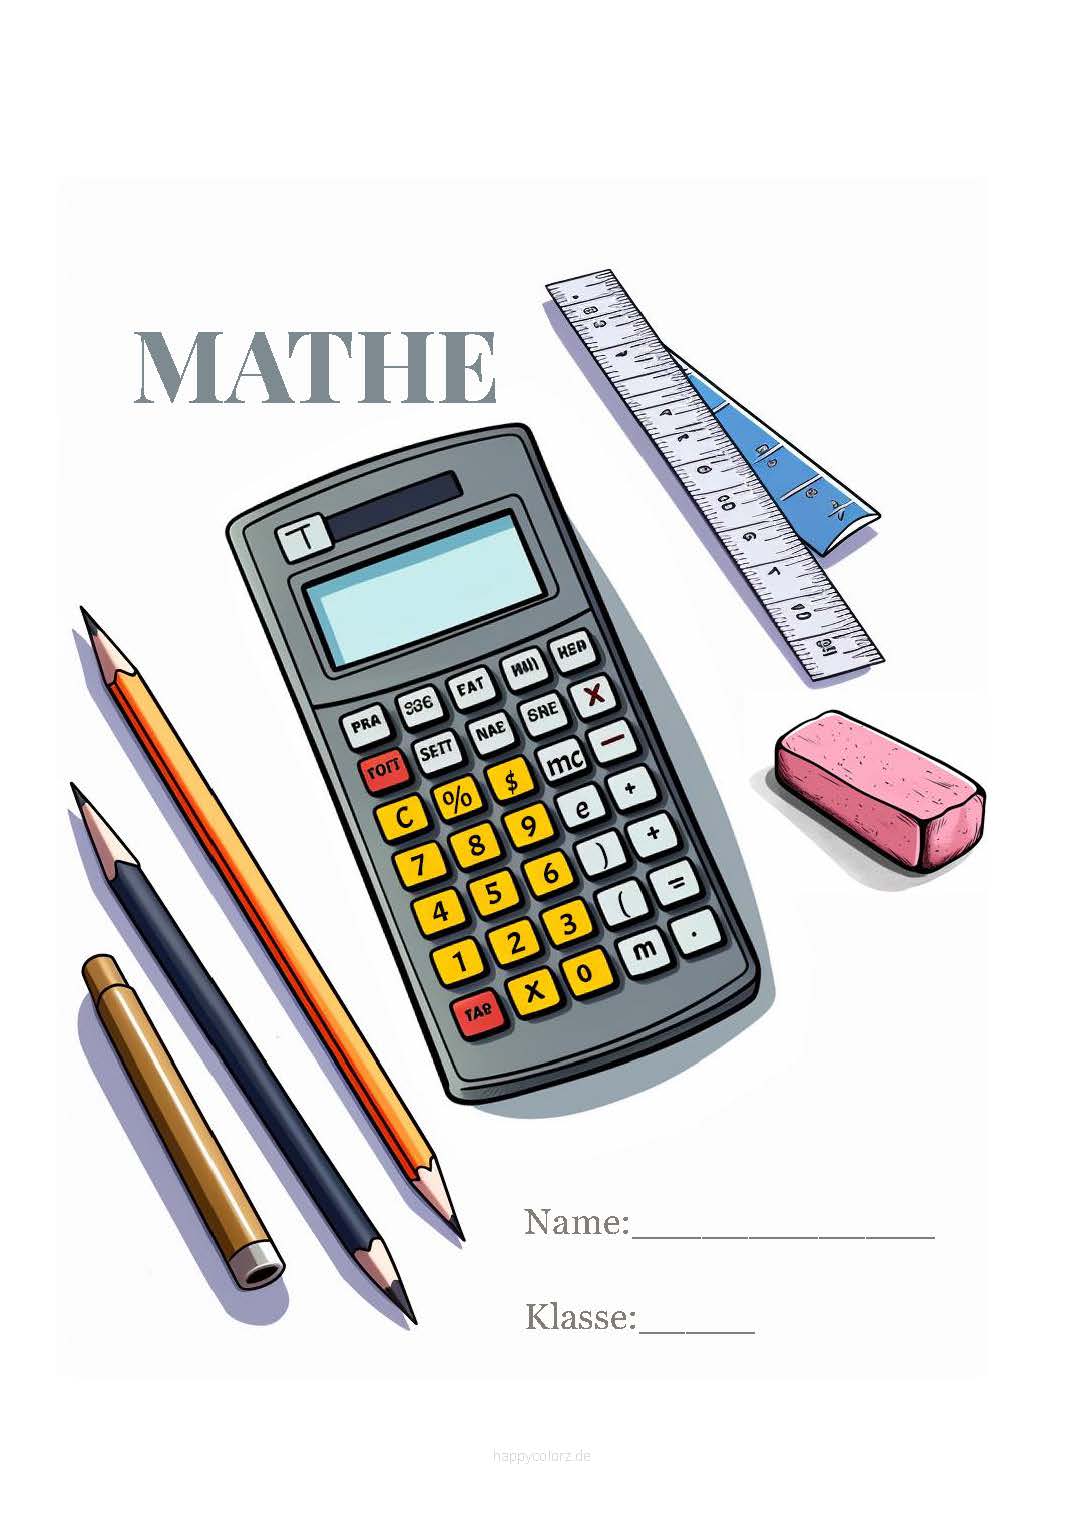 Buntes Mathe Deckblatt mit Rechner zum kostenlosen ausdrucken (pdf)